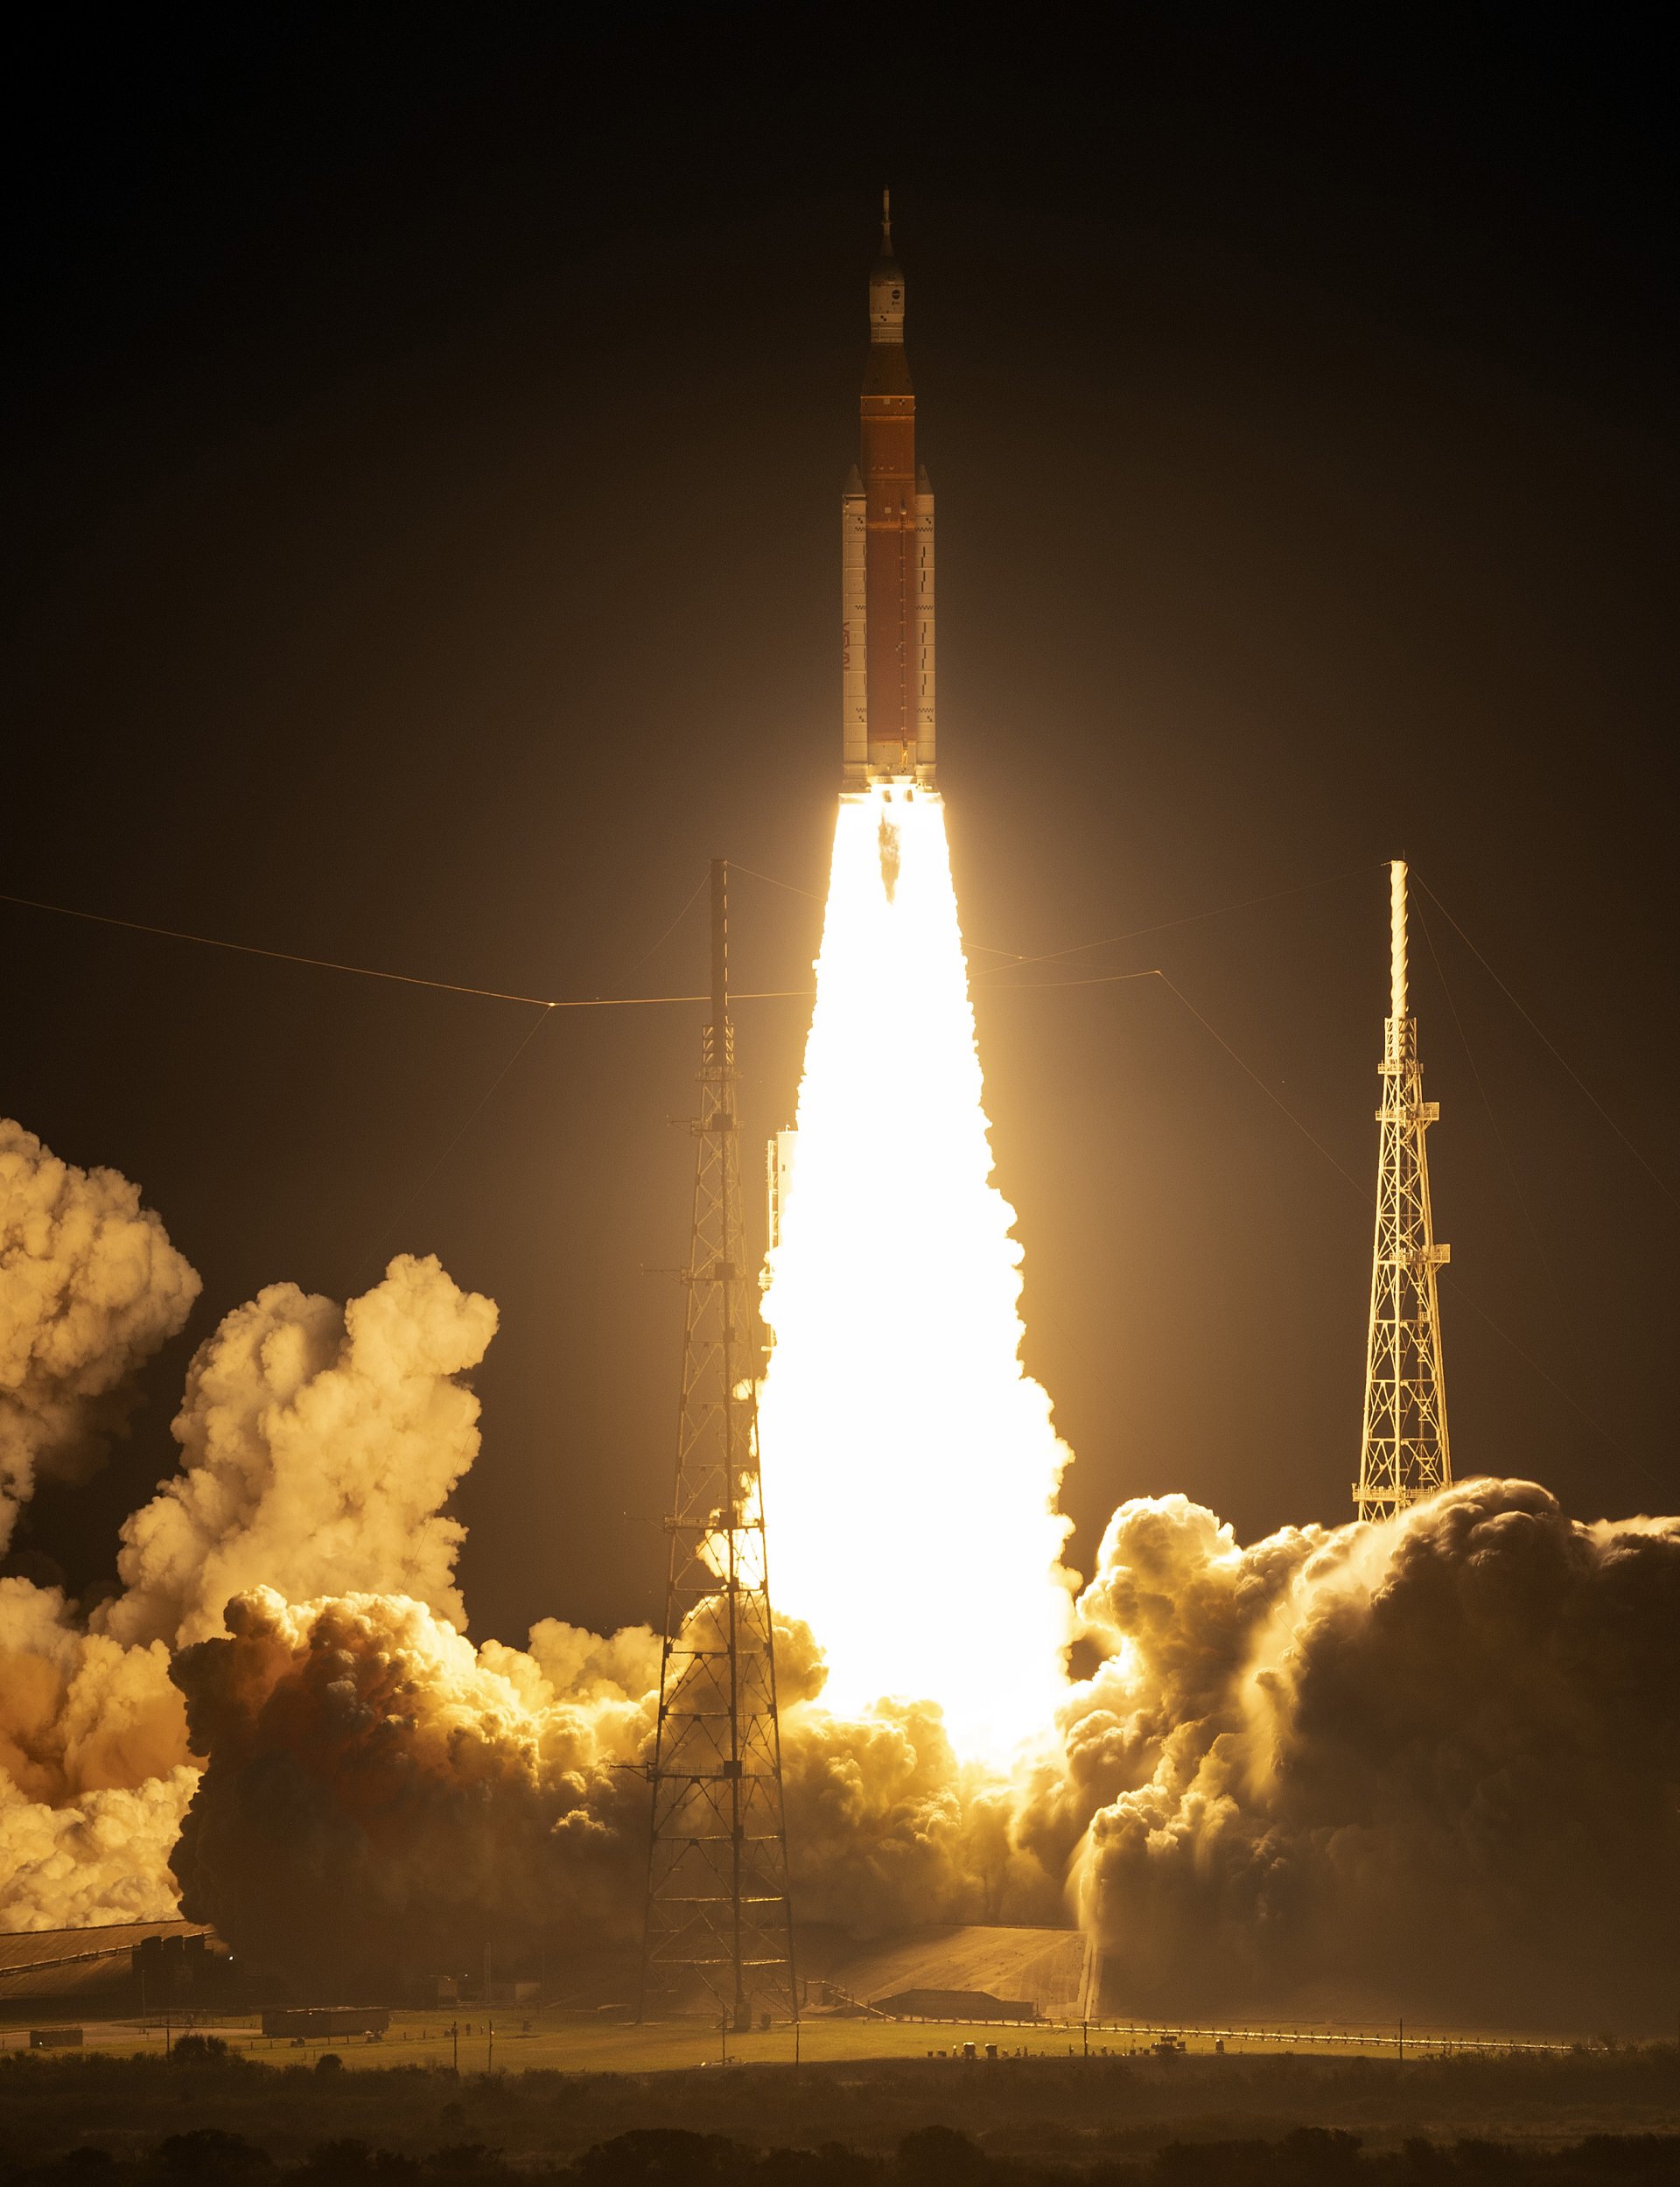  Ракетата Artemis I Space Launch System (SLS) на НАСА с прикрепената капсула Orion изстреля в космическия център Кенеди на НАСА на 16 ноември 2022 г. в Кейп Канаверал, Флорида. 